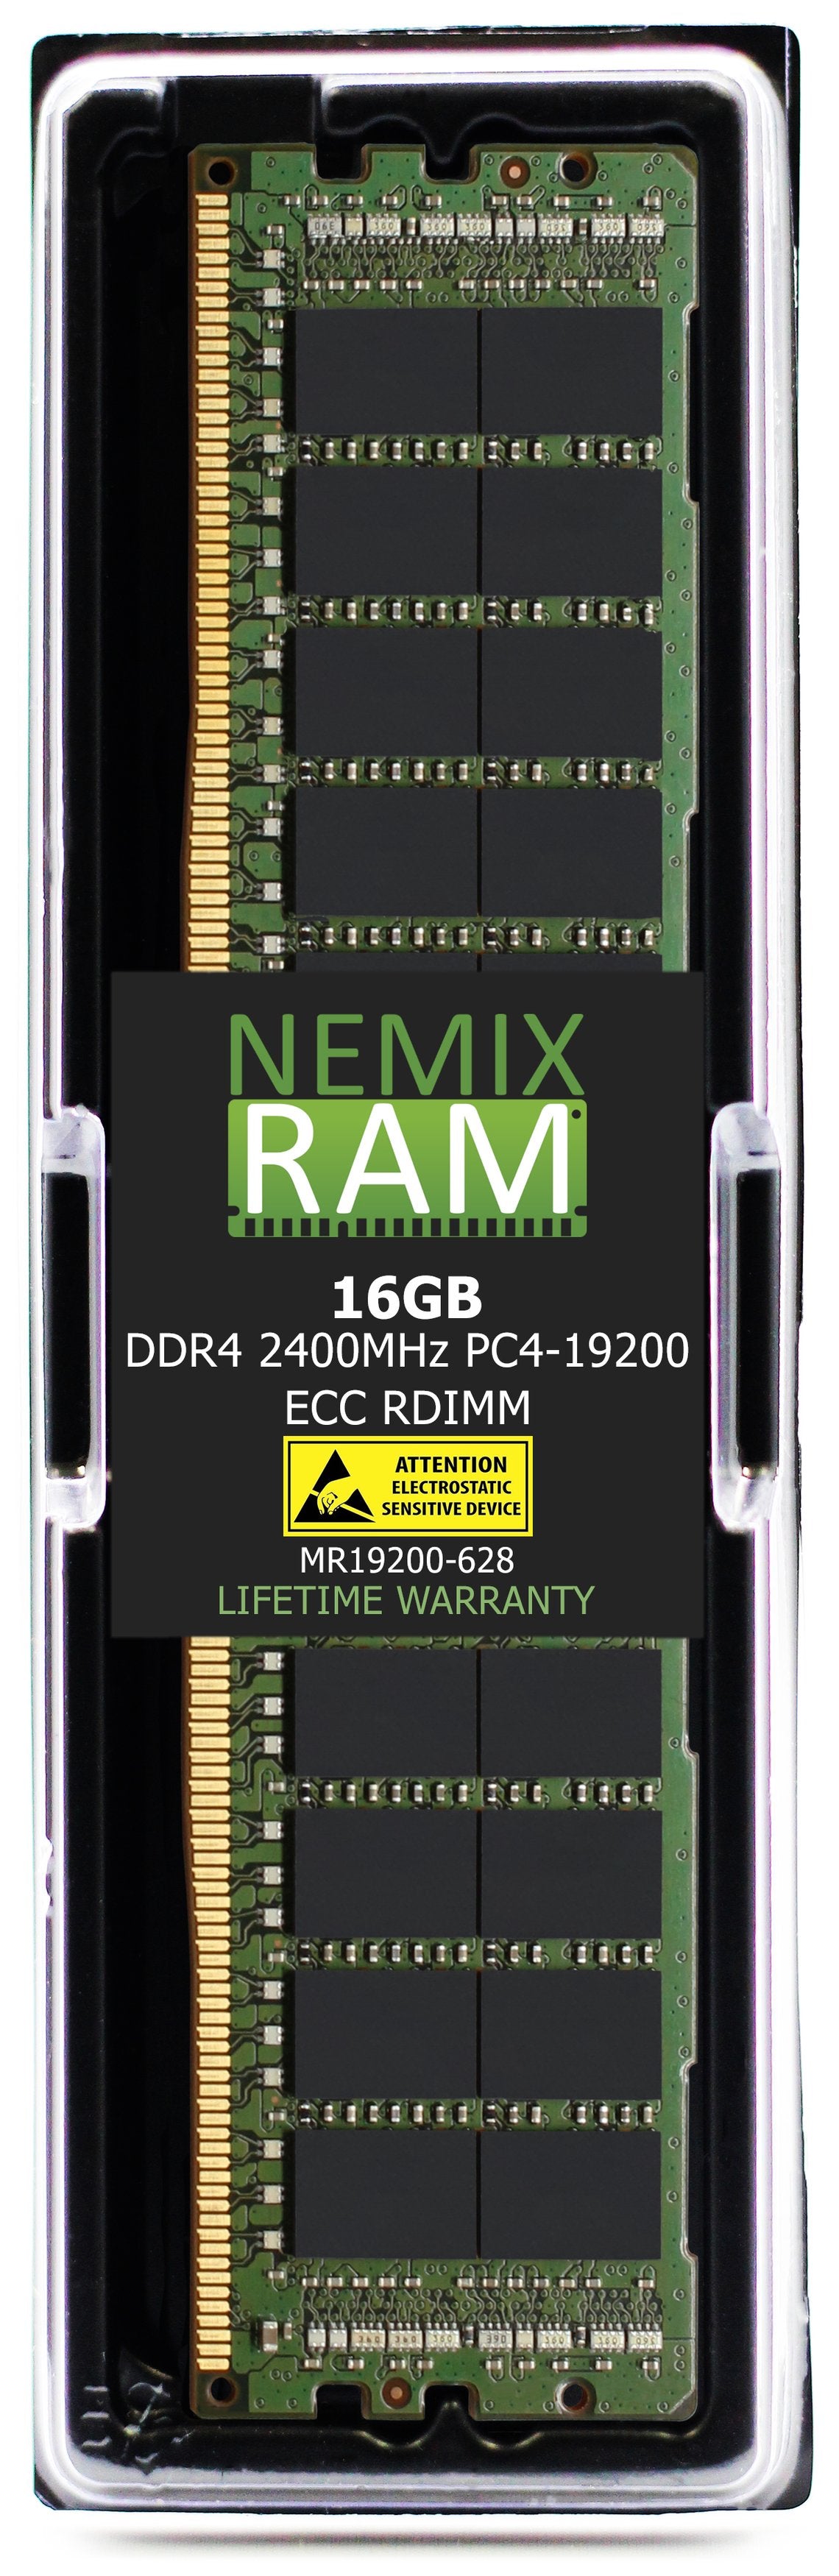 DELL SNPHNDJ7DG/16G A9365698 16GB DDR4-2400 PC4-19200 RDIMM Compatible Upgrade